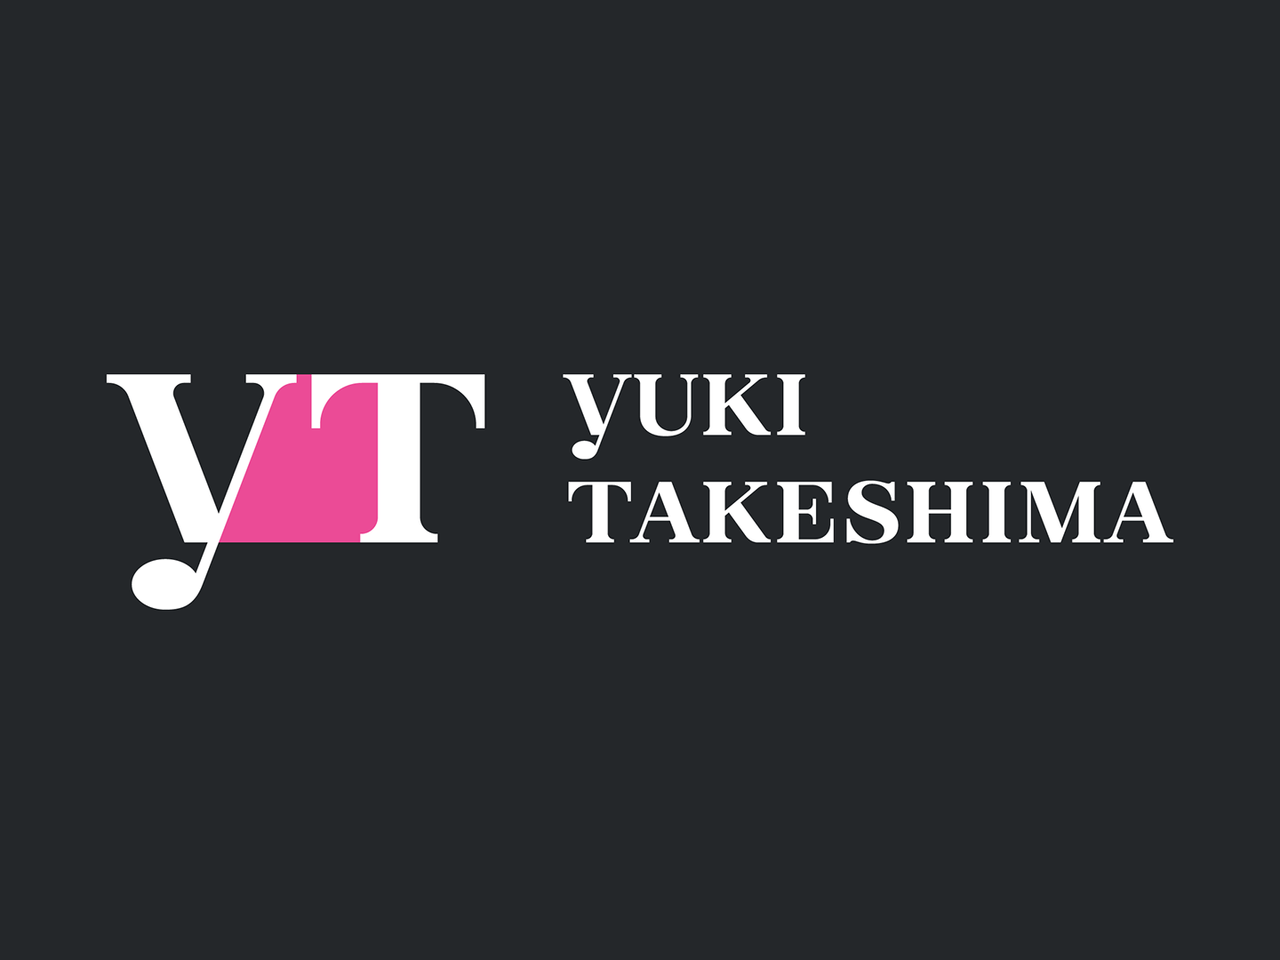 ユキ タケシマ yUKI TAKESHIMAの求人の写真1